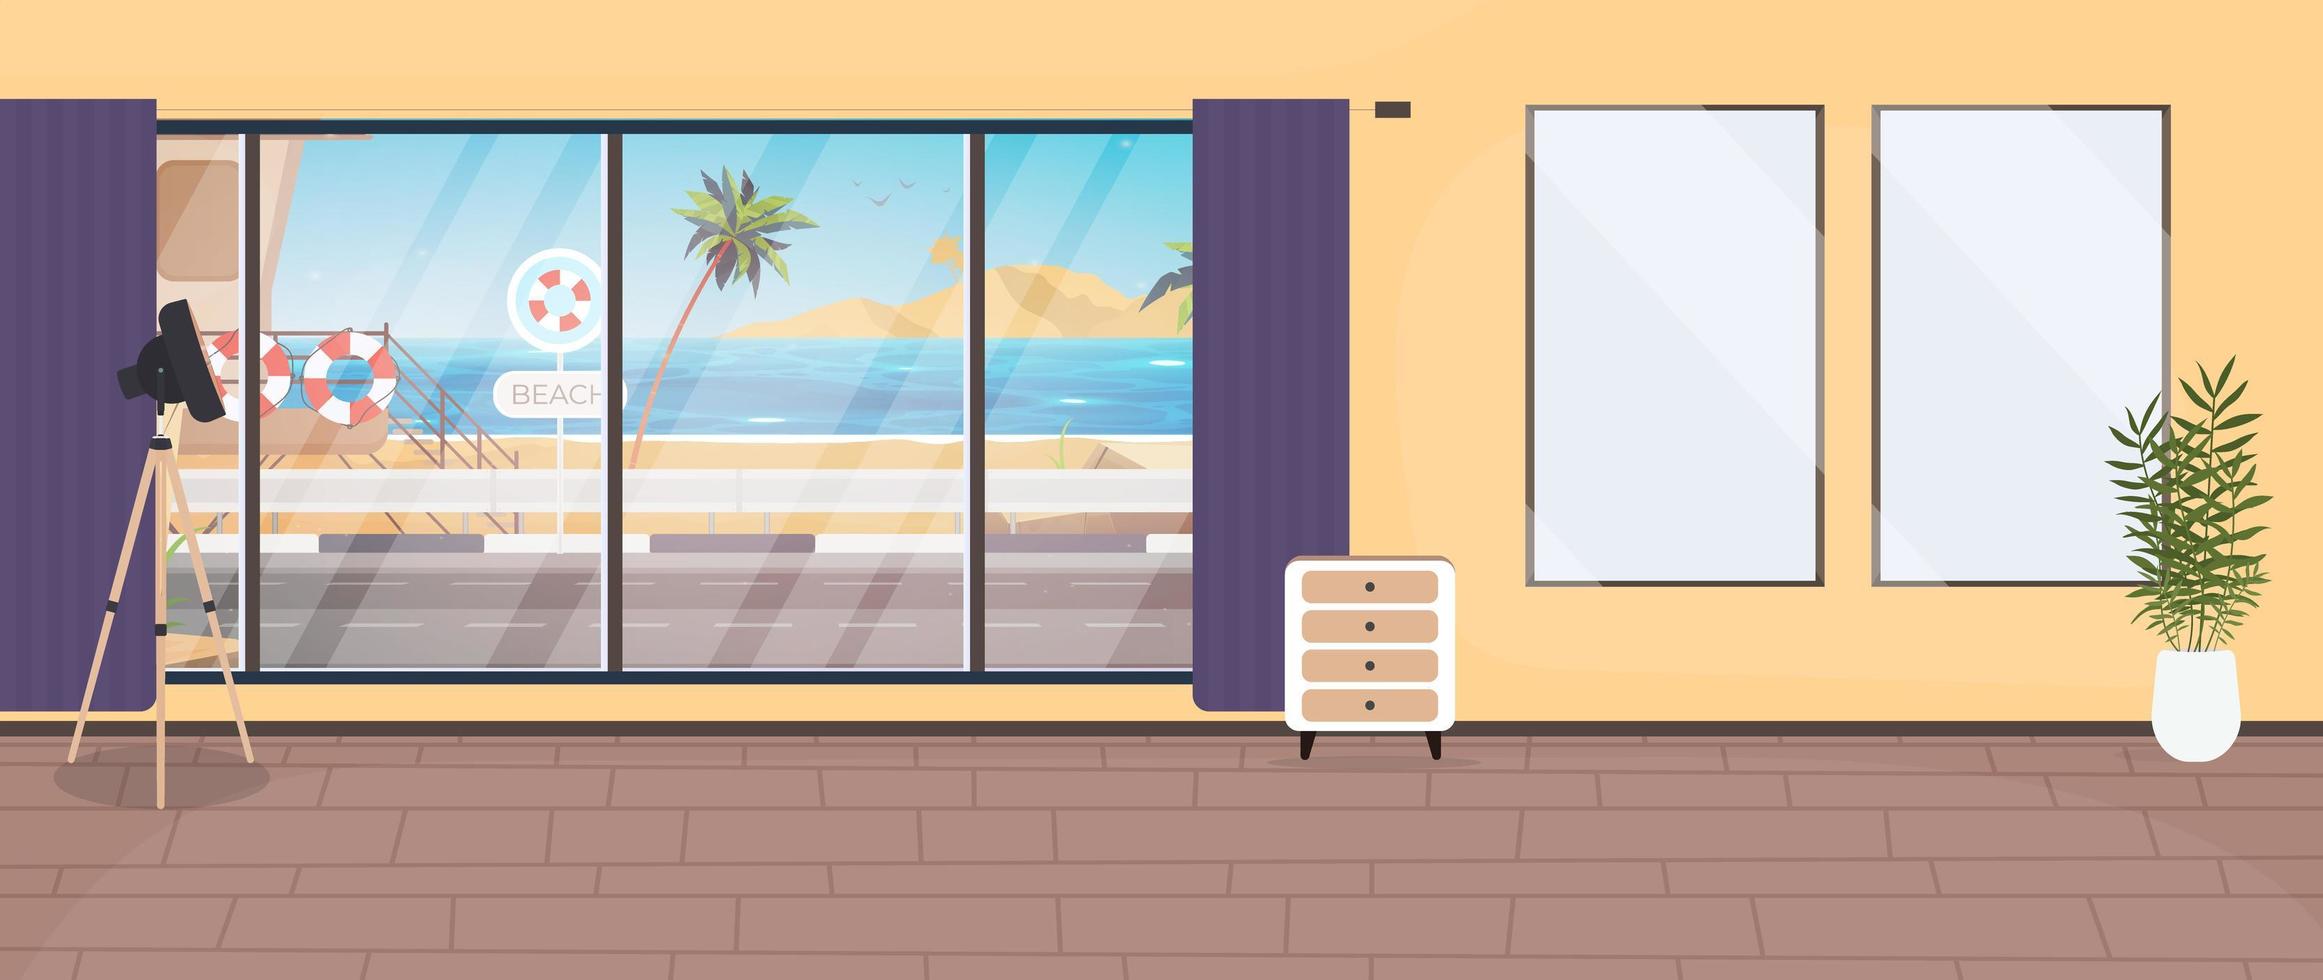 um quarto com uma grande janela panorâmica com vista para o mar. estilo dos desenhos animados, ilustração vetorial. vetor